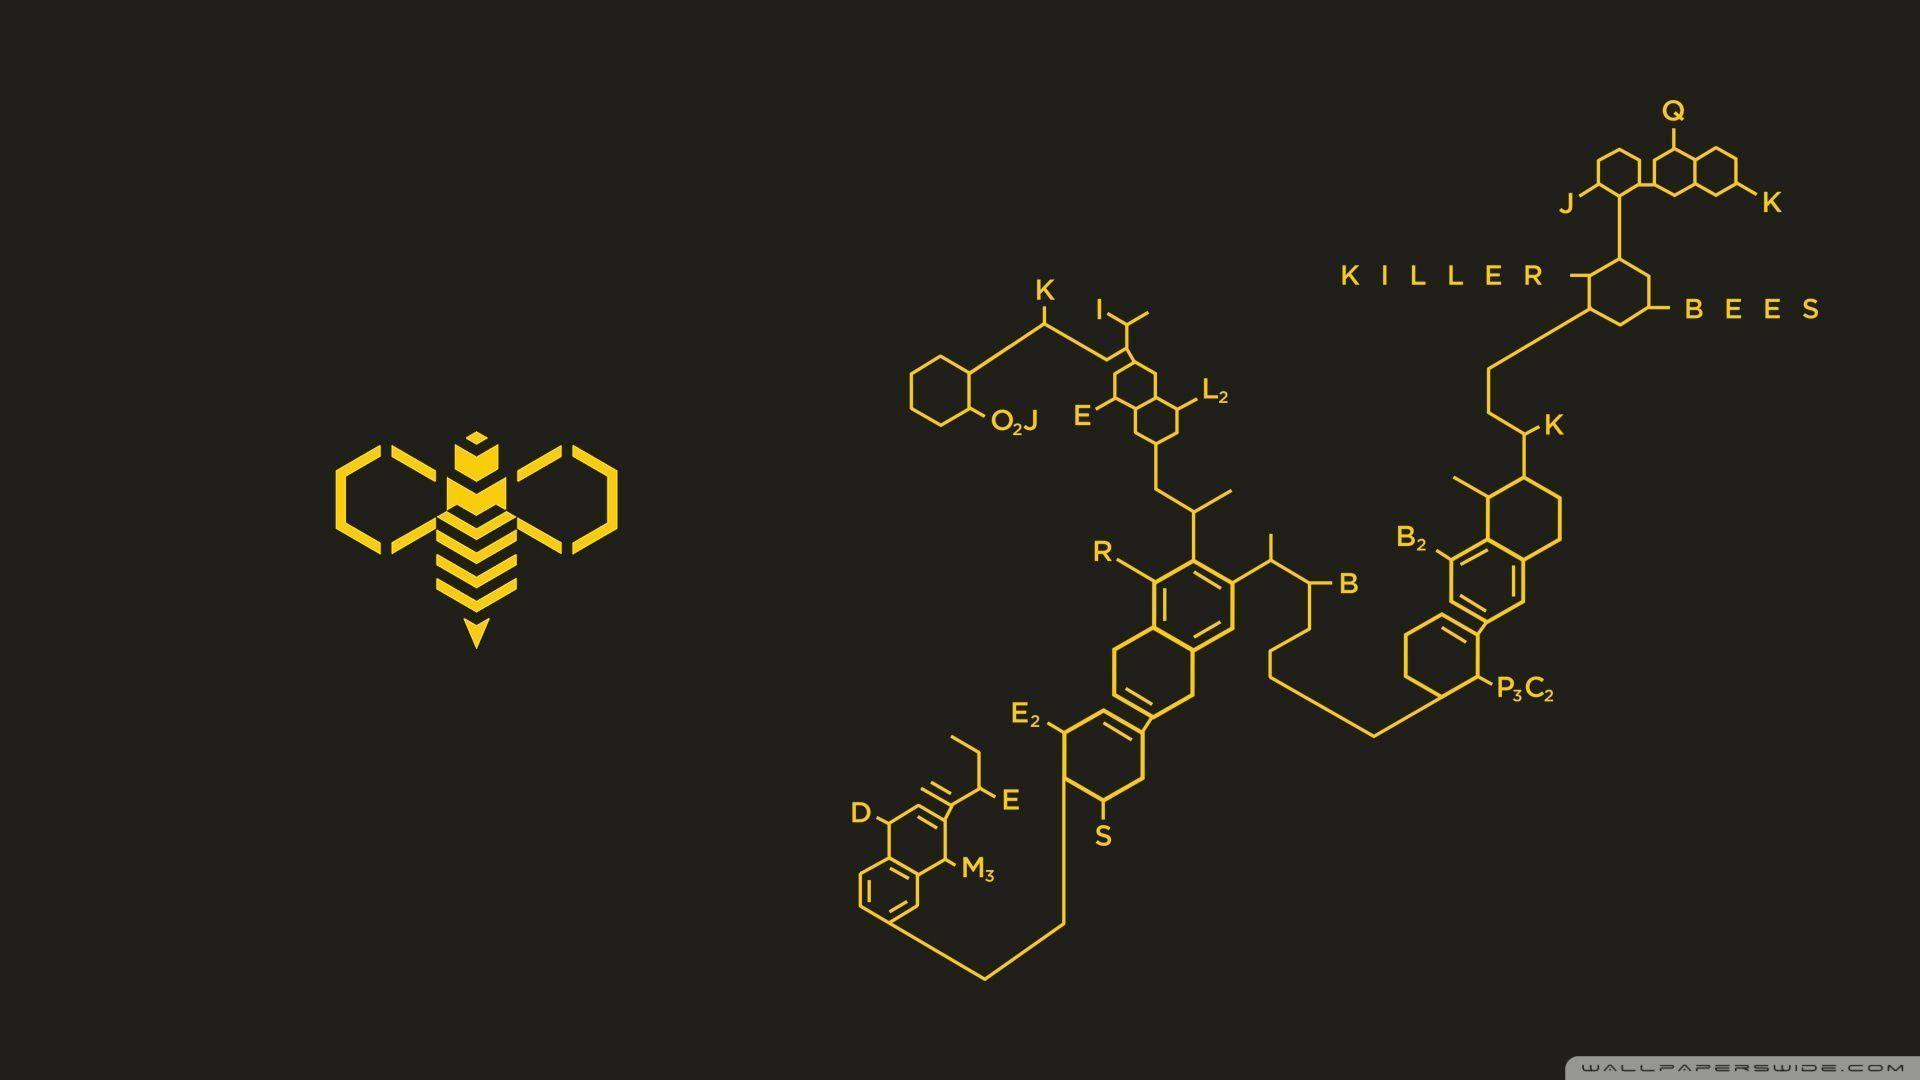 Killer Bees HD desktop wallpaper, Widescreen, High Definition